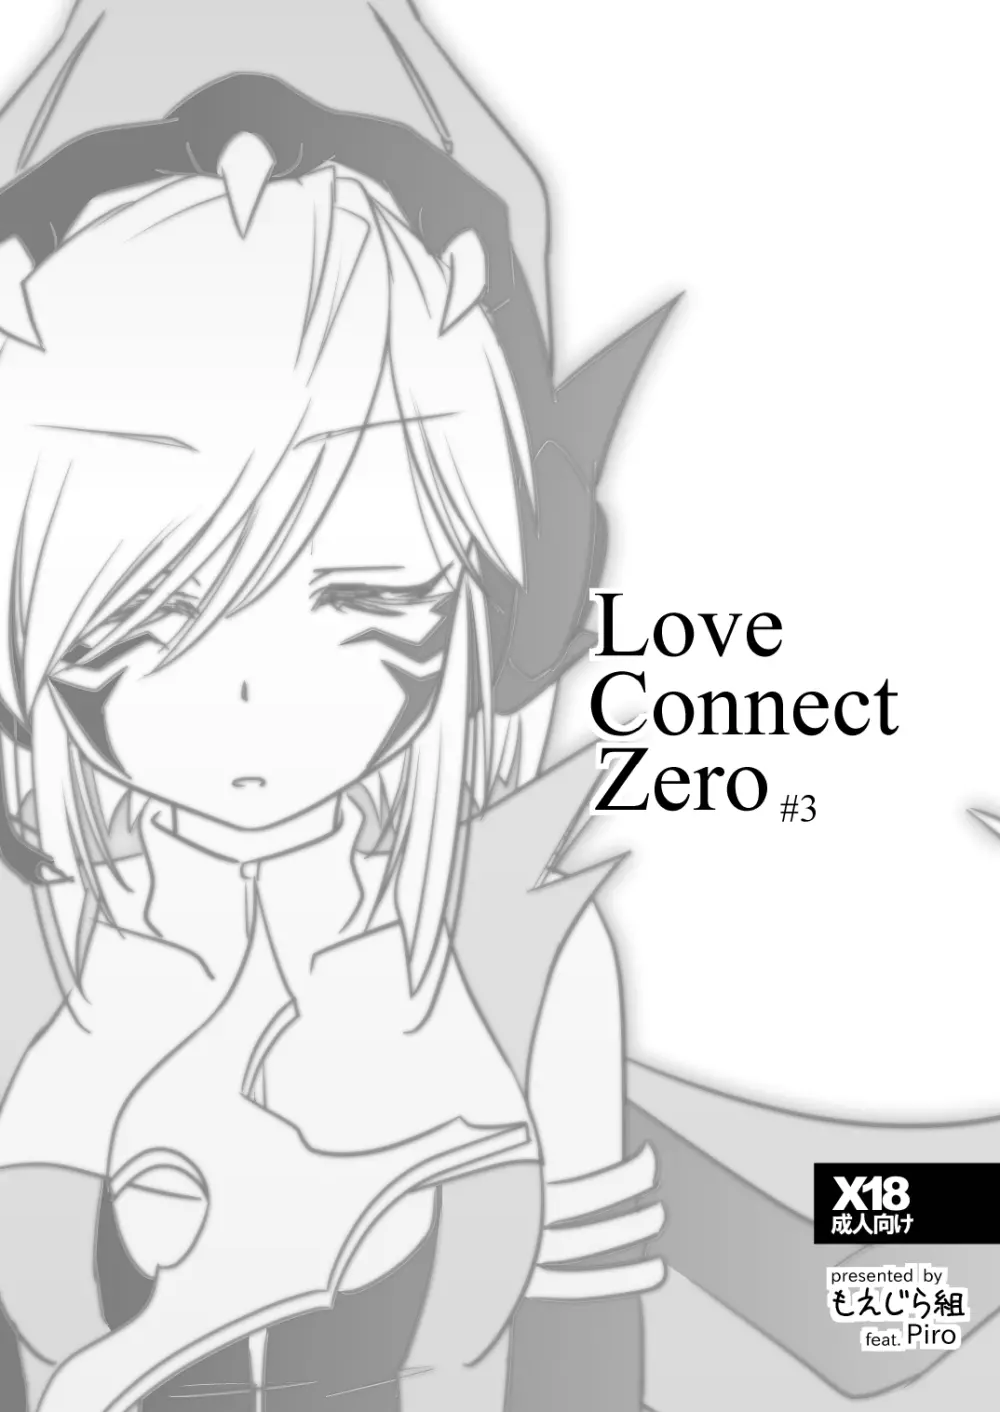 LoveConnect Zero #3